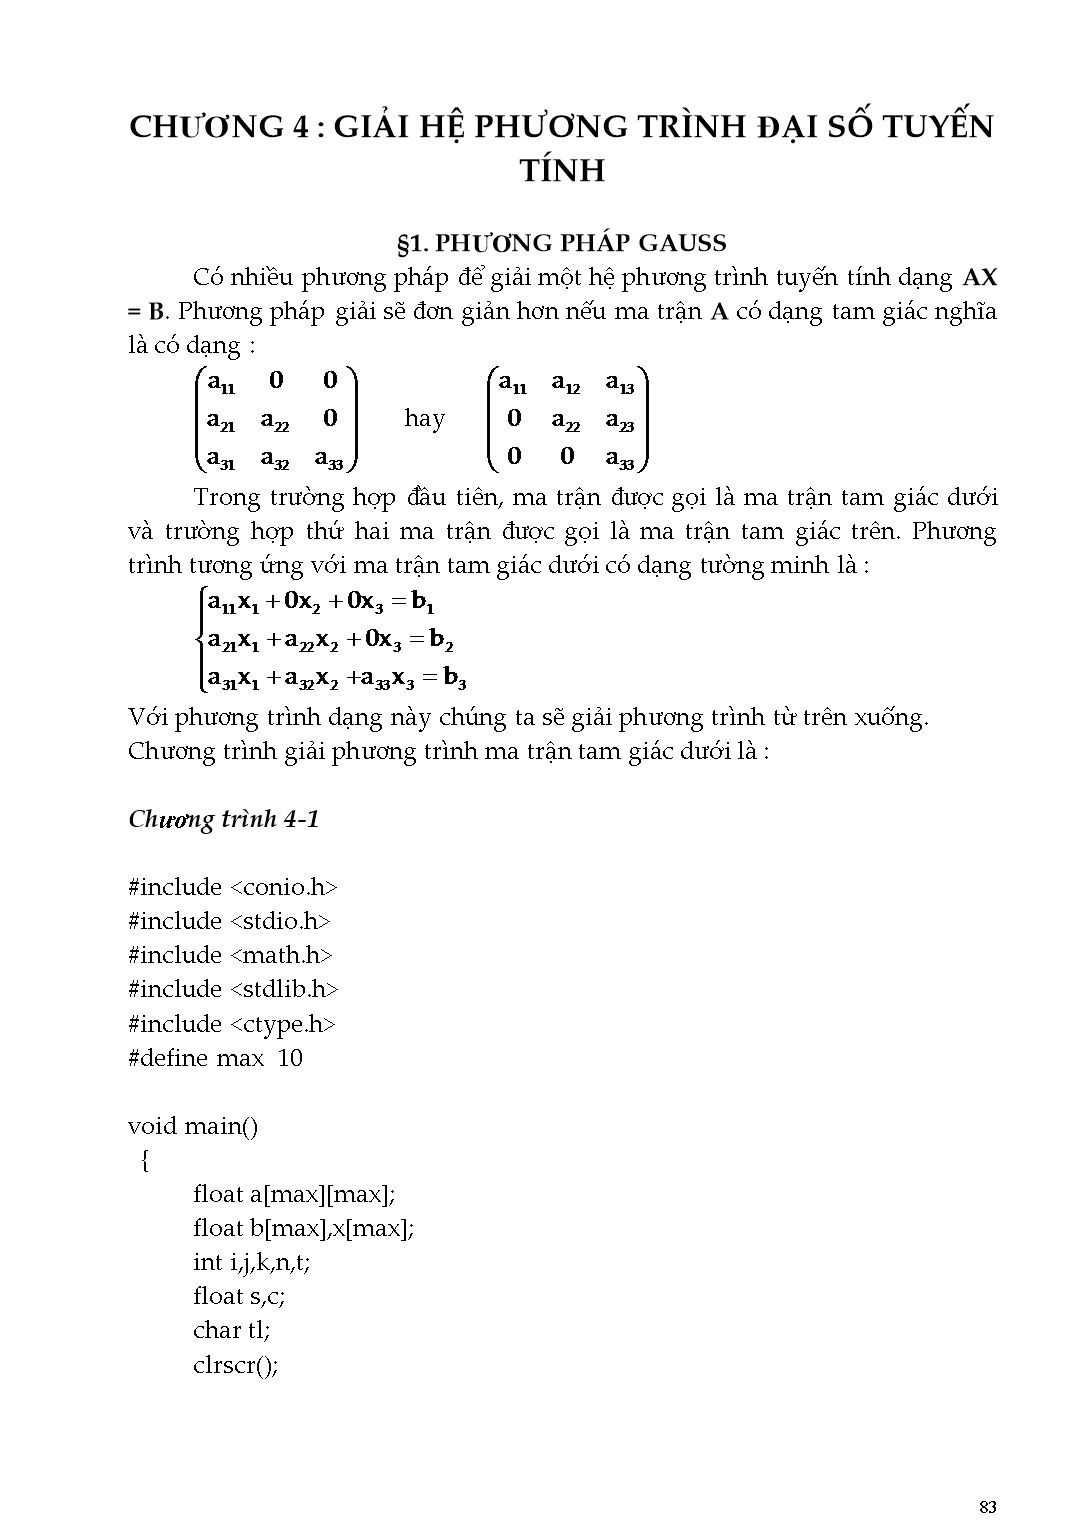 Giáo trình Phương pháp tính - Chương 4: Giải hệ phương trình đại số tuyến tính trang 1